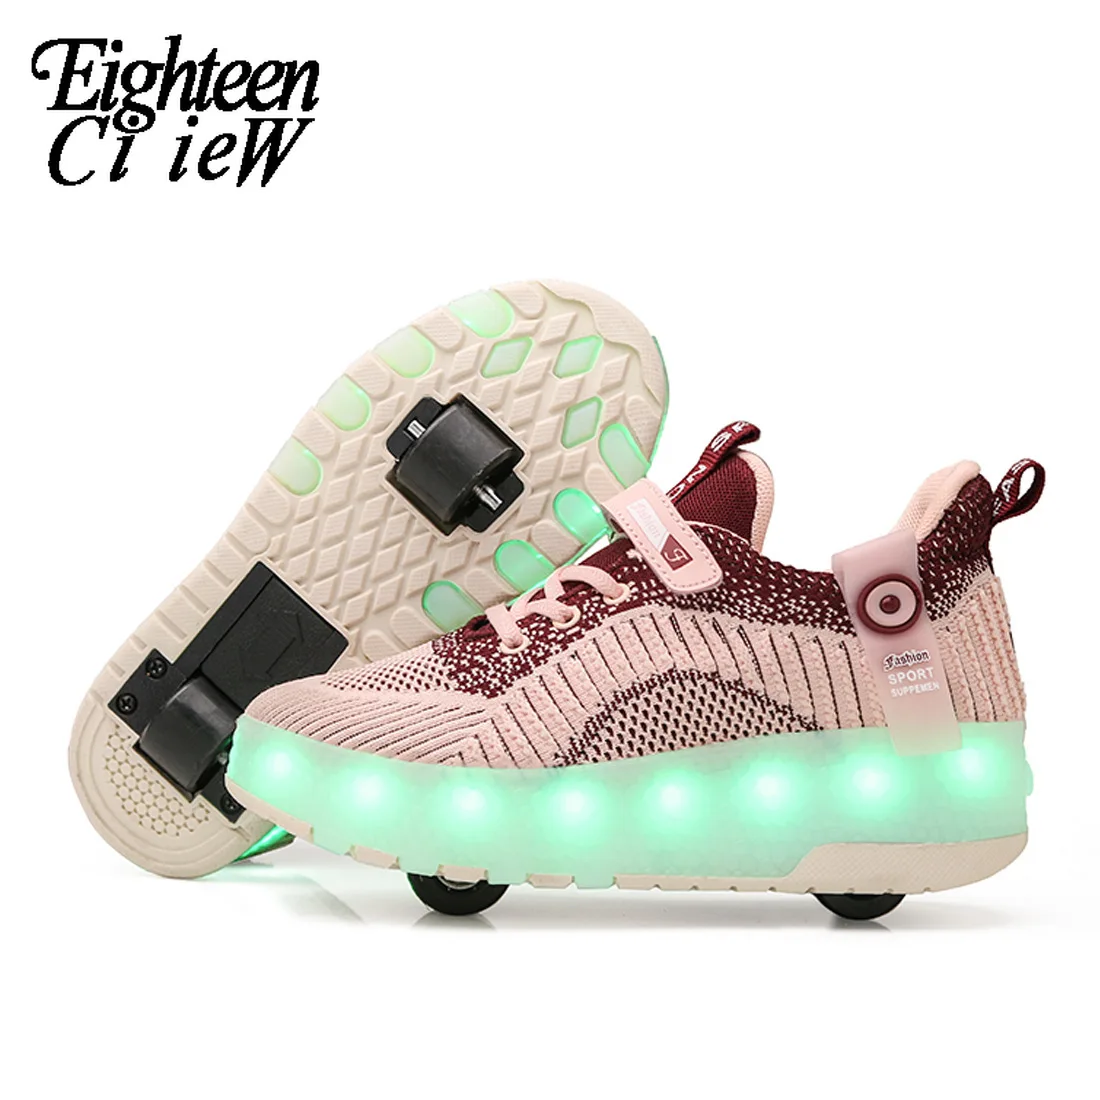 

Светящиеся кроссовки на колесиках, обувь с подзарядкой через USB, мигающие светодиодные роликовые коньки с двойными колесиками для девочек, ...